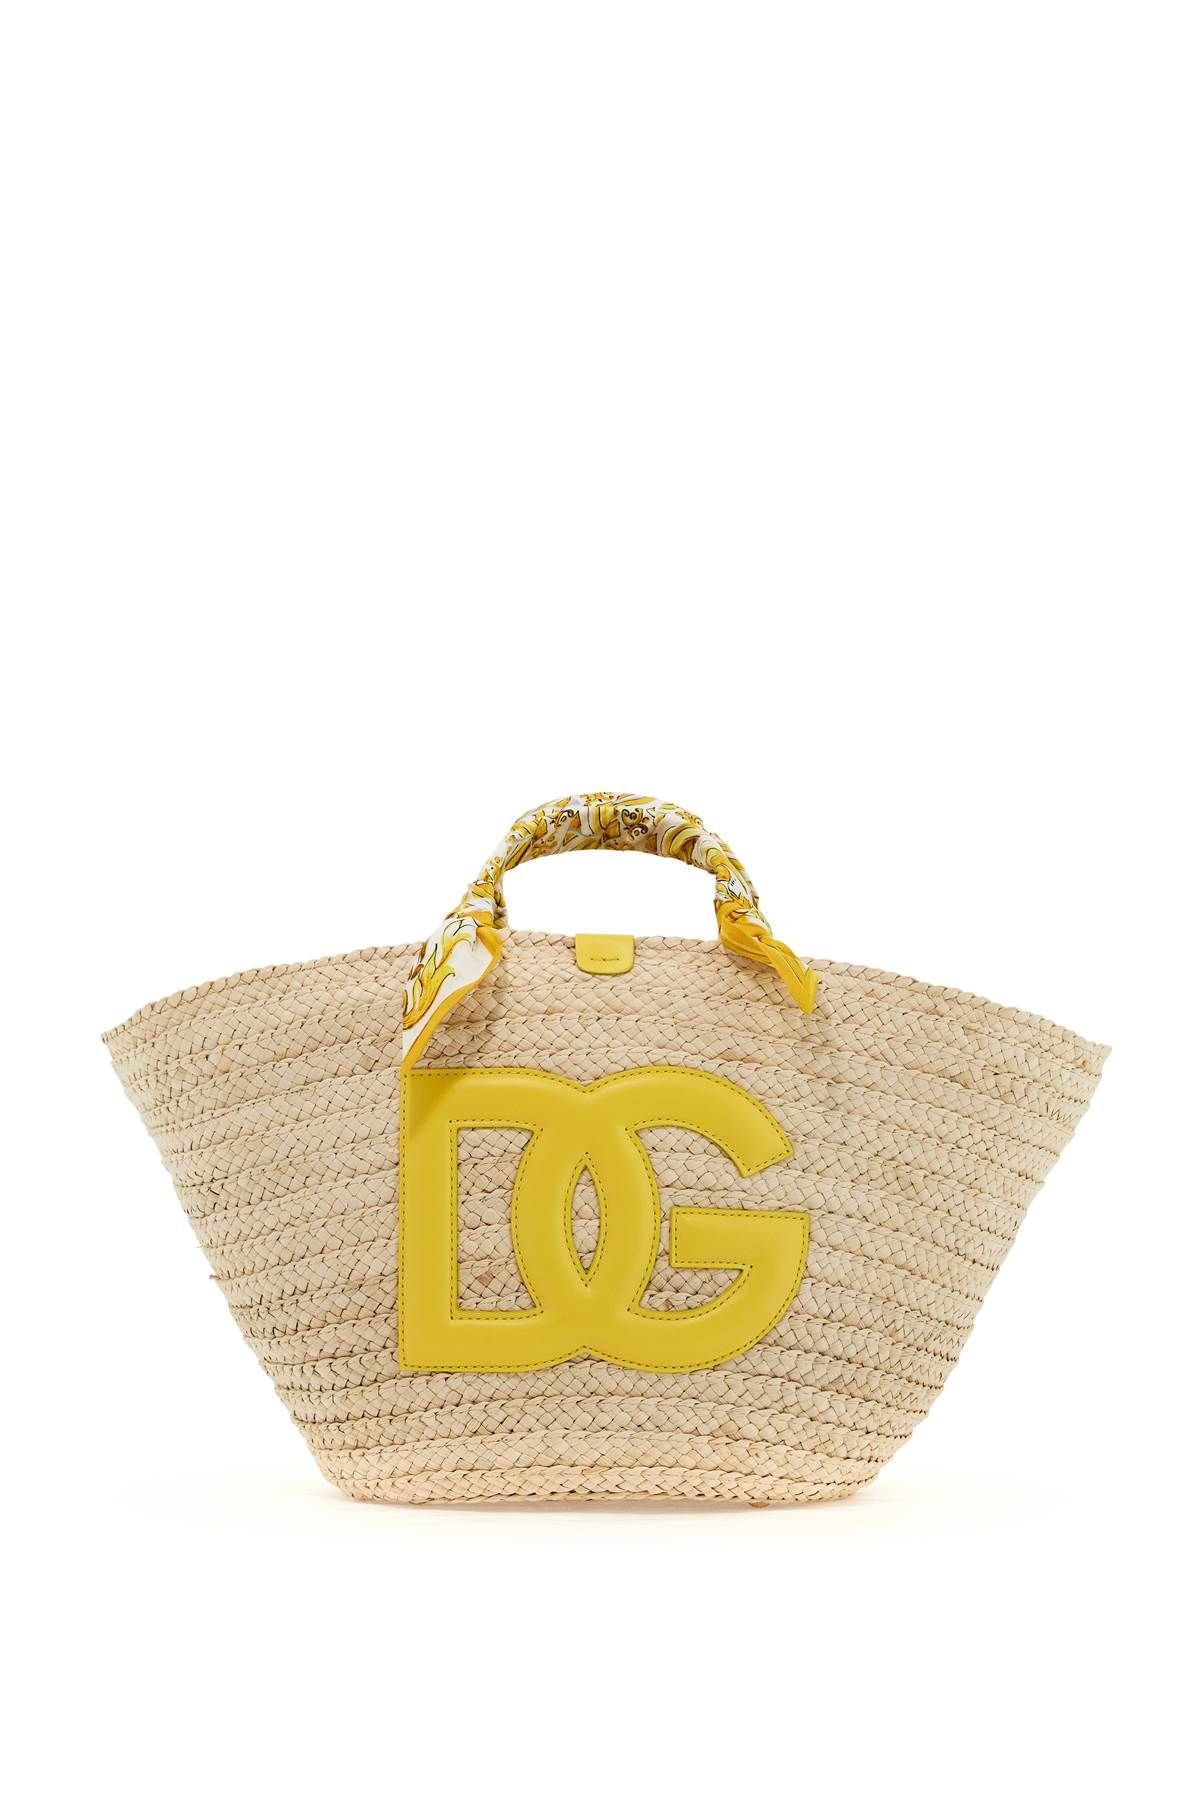 Dolce & Gabbana DOLCE & GABBANA medium-sized kendra tote bag